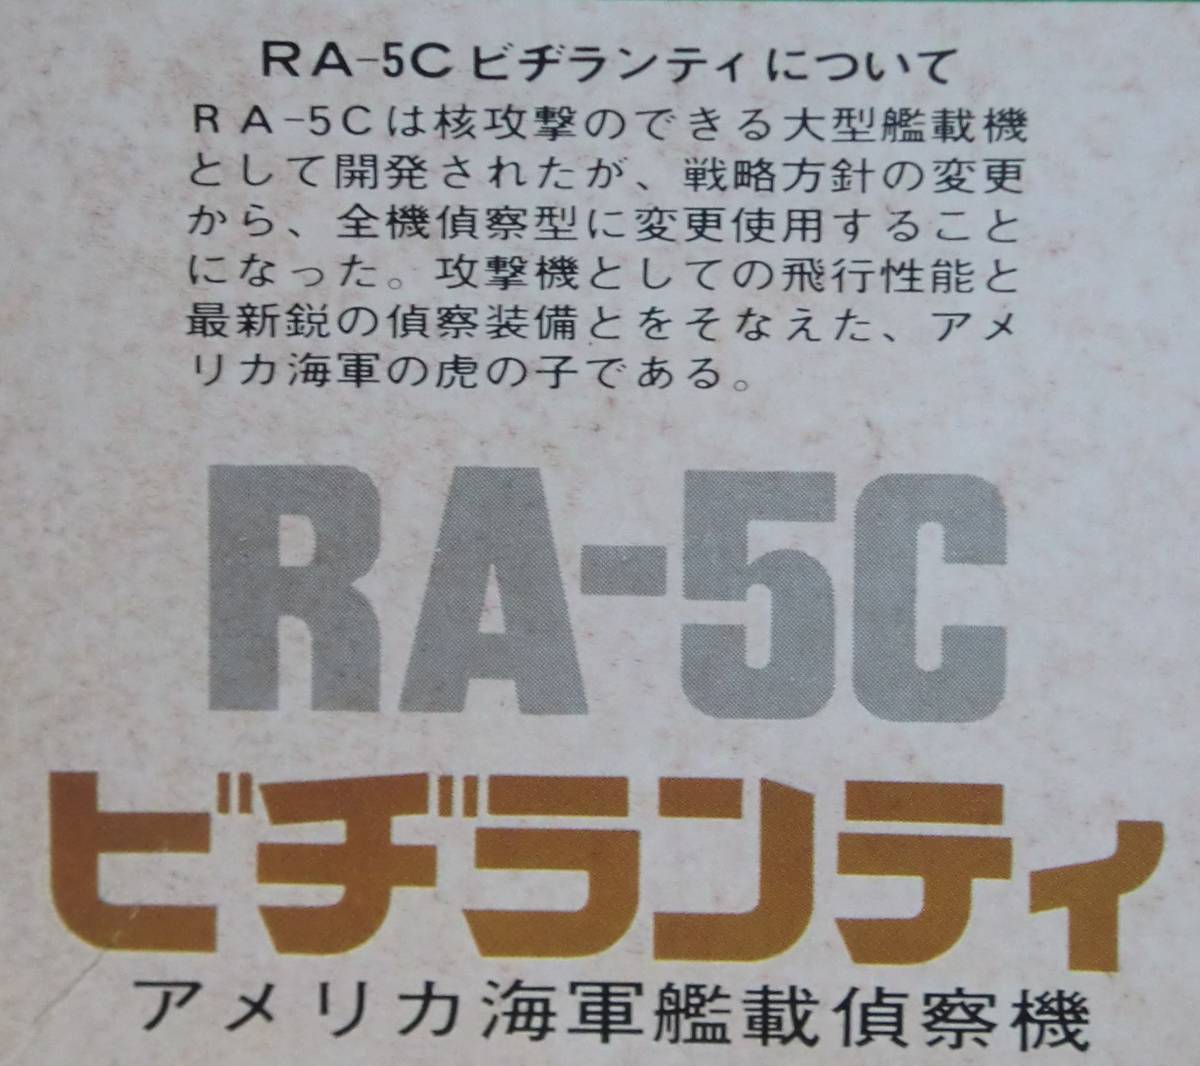 【ハセガワ】 アメリカ海軍艦載偵察機 RA-5C (ビジランティー) ・ 1/72 スケール 【未組立】_画像6